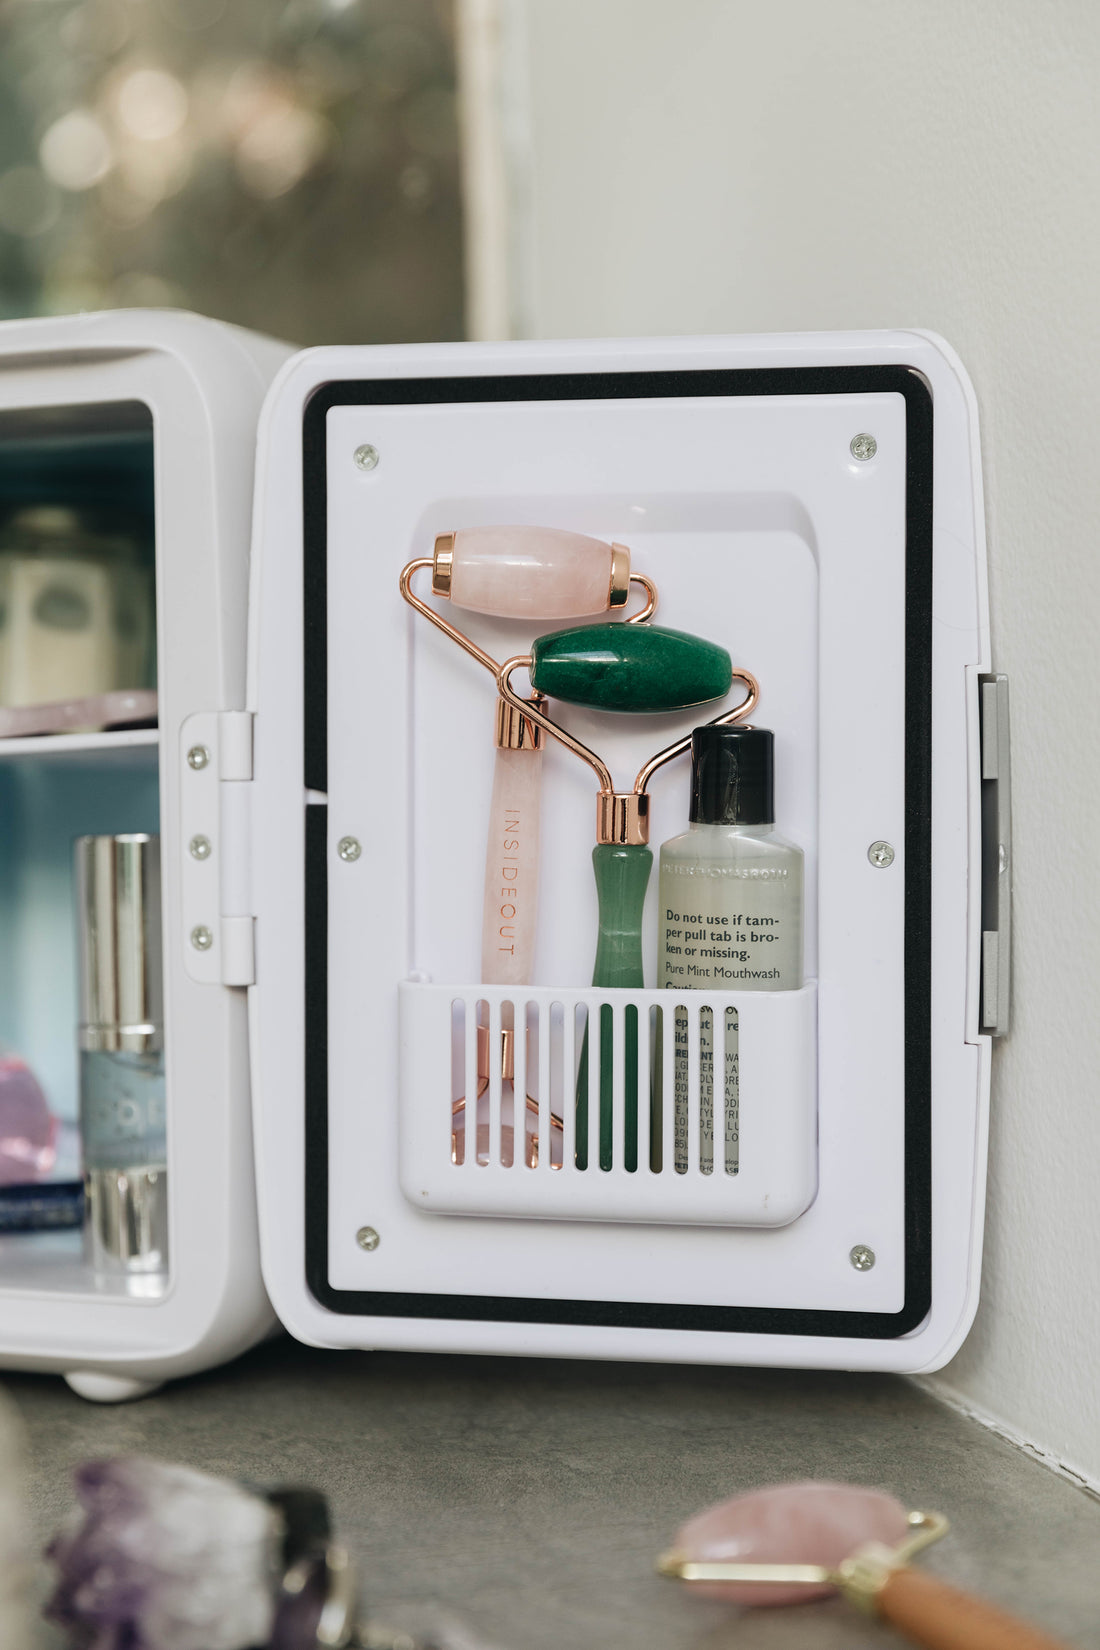 GENERICO Mini Refrigerador Con Espejo Skincare 8 Litros Frio Y